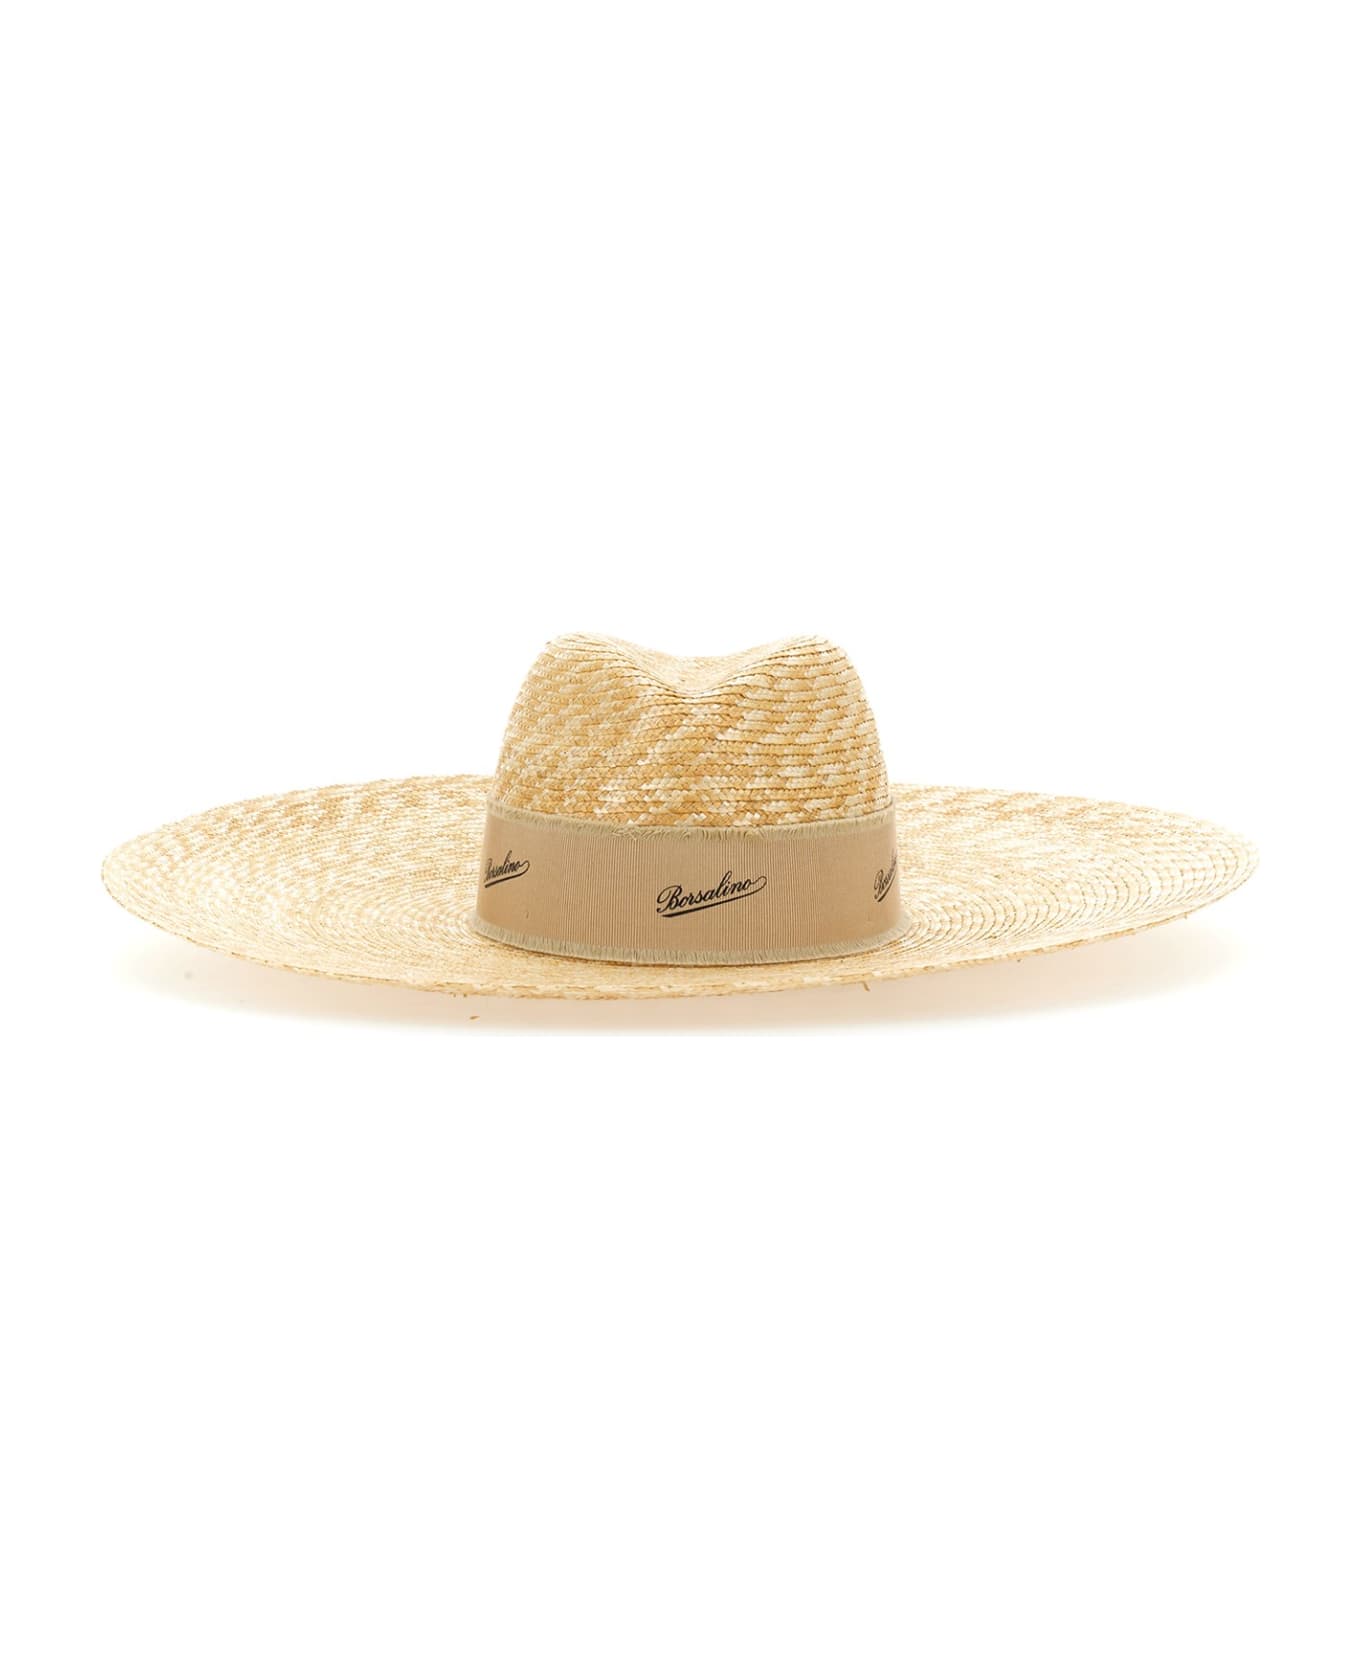 Borsalino Straw Hat - Naturale 帽子